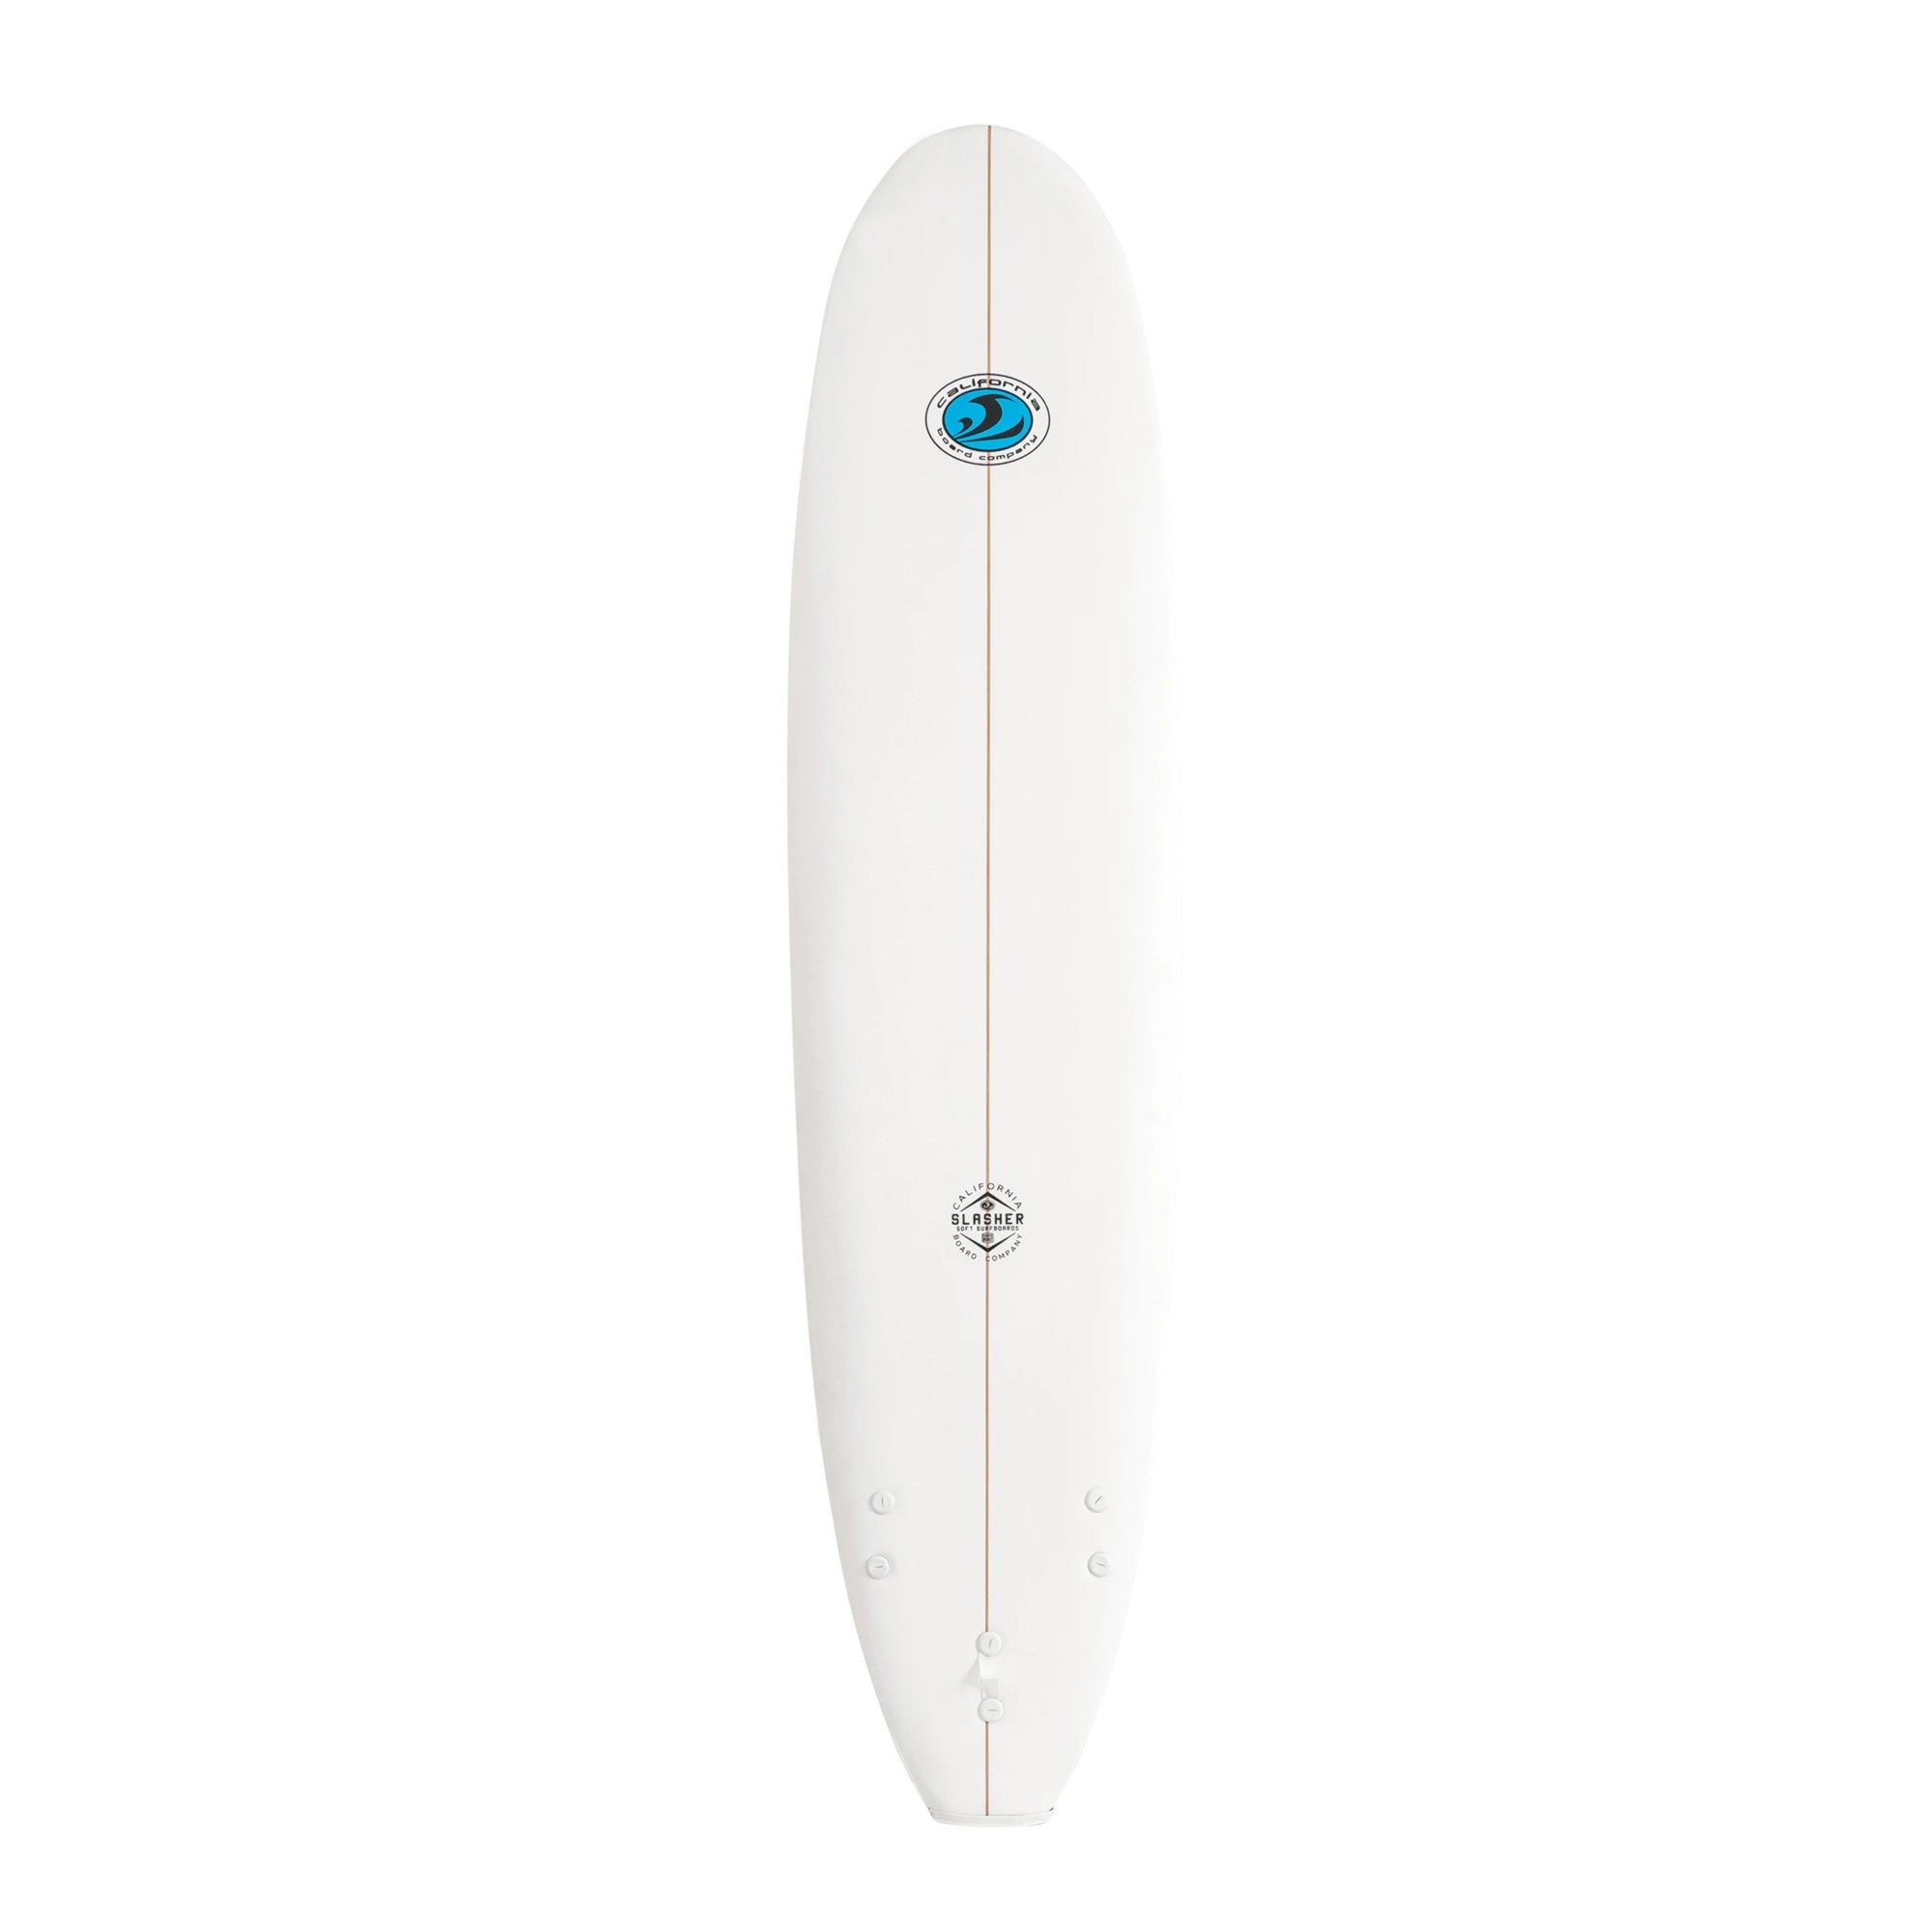 CBC - Foam Surfboard - Softboard Slasher 8'0